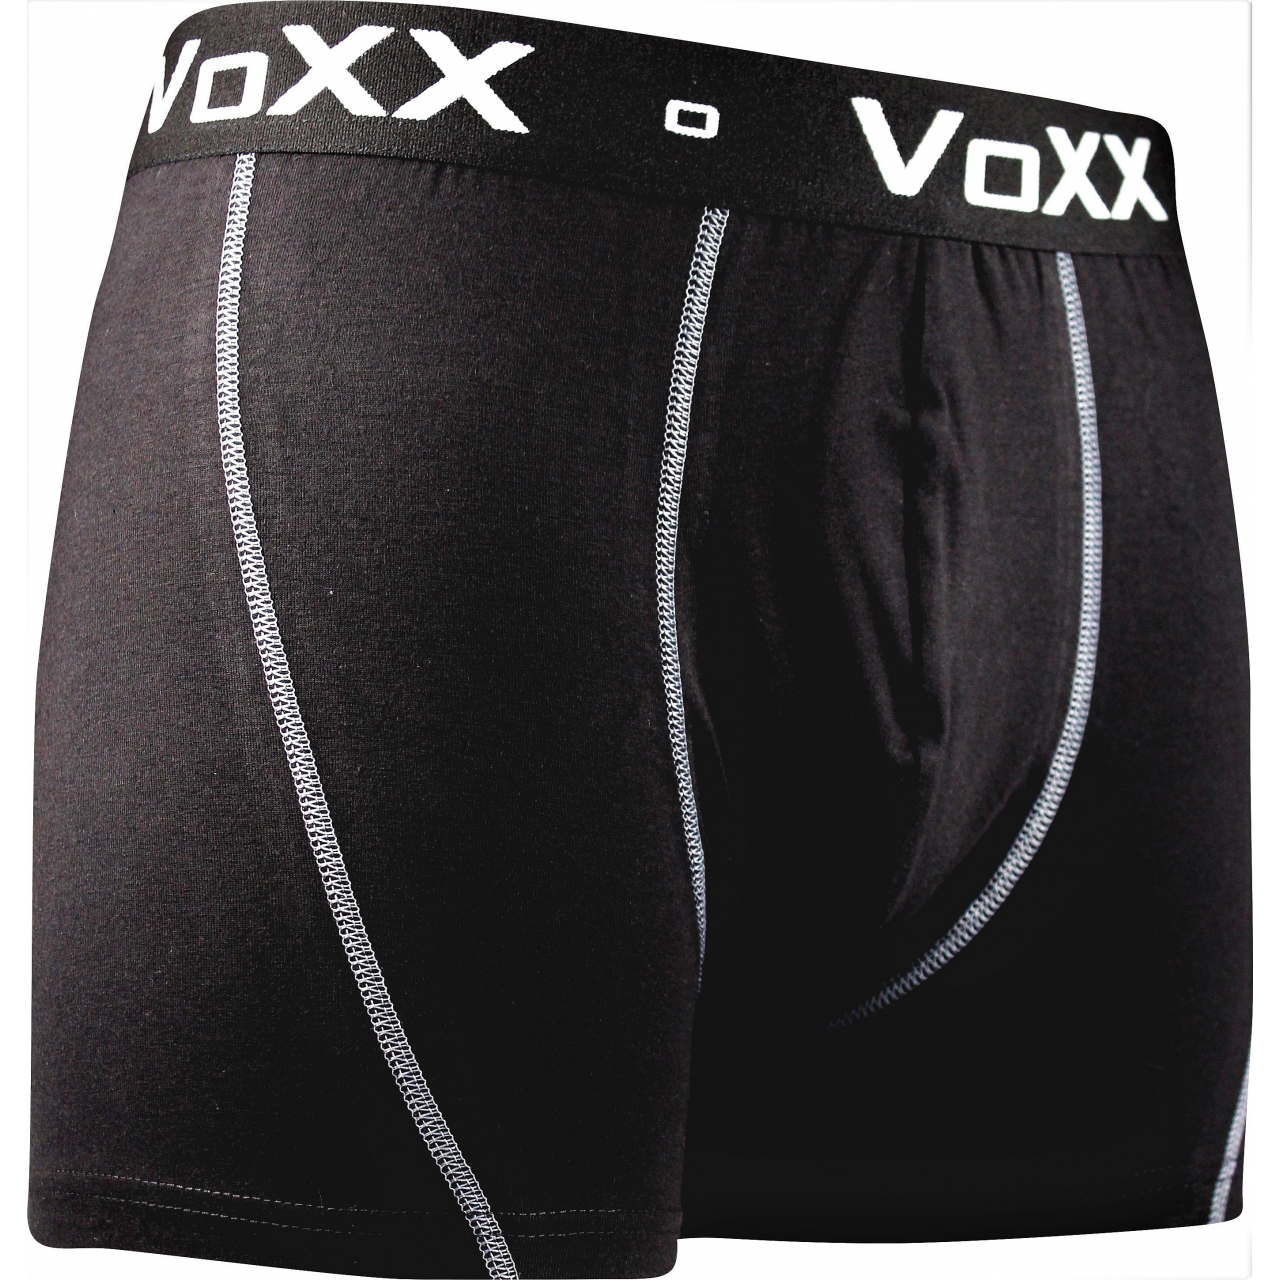 Pánské boxerky Voxx Kvido II - černé, XL